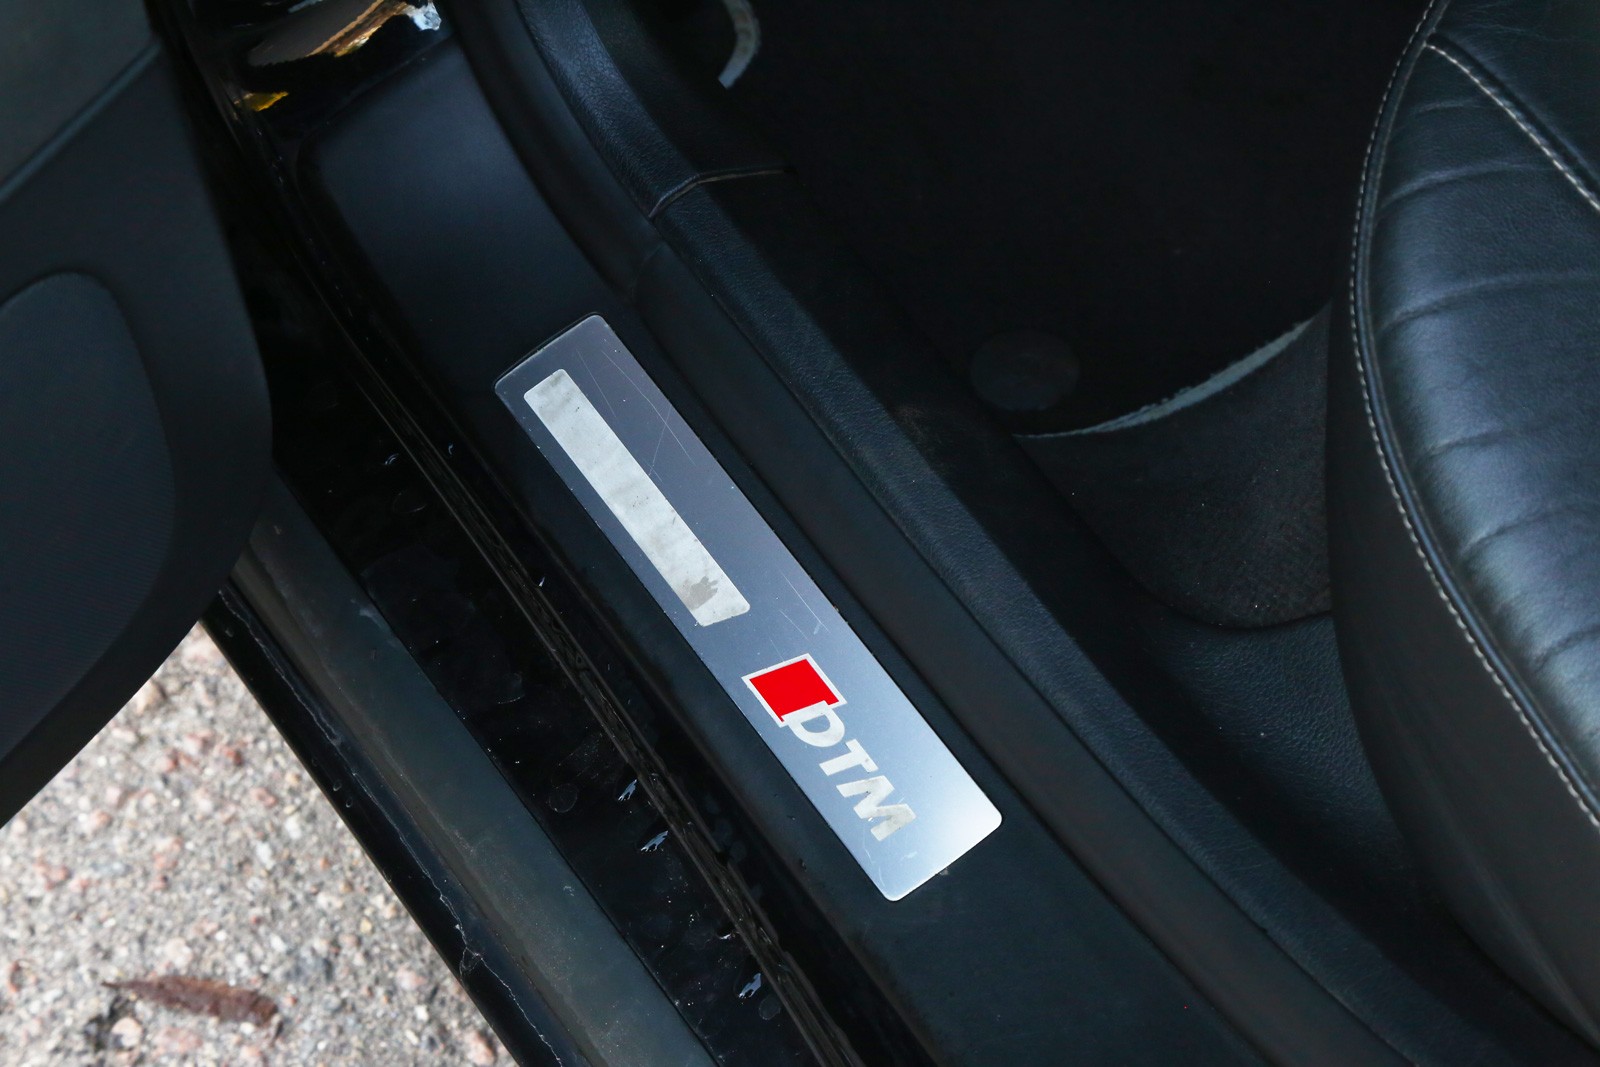 Audi A4 III с пробегом: секретная ржавчина на днище, неубиваемый салон и капризные светодиоды